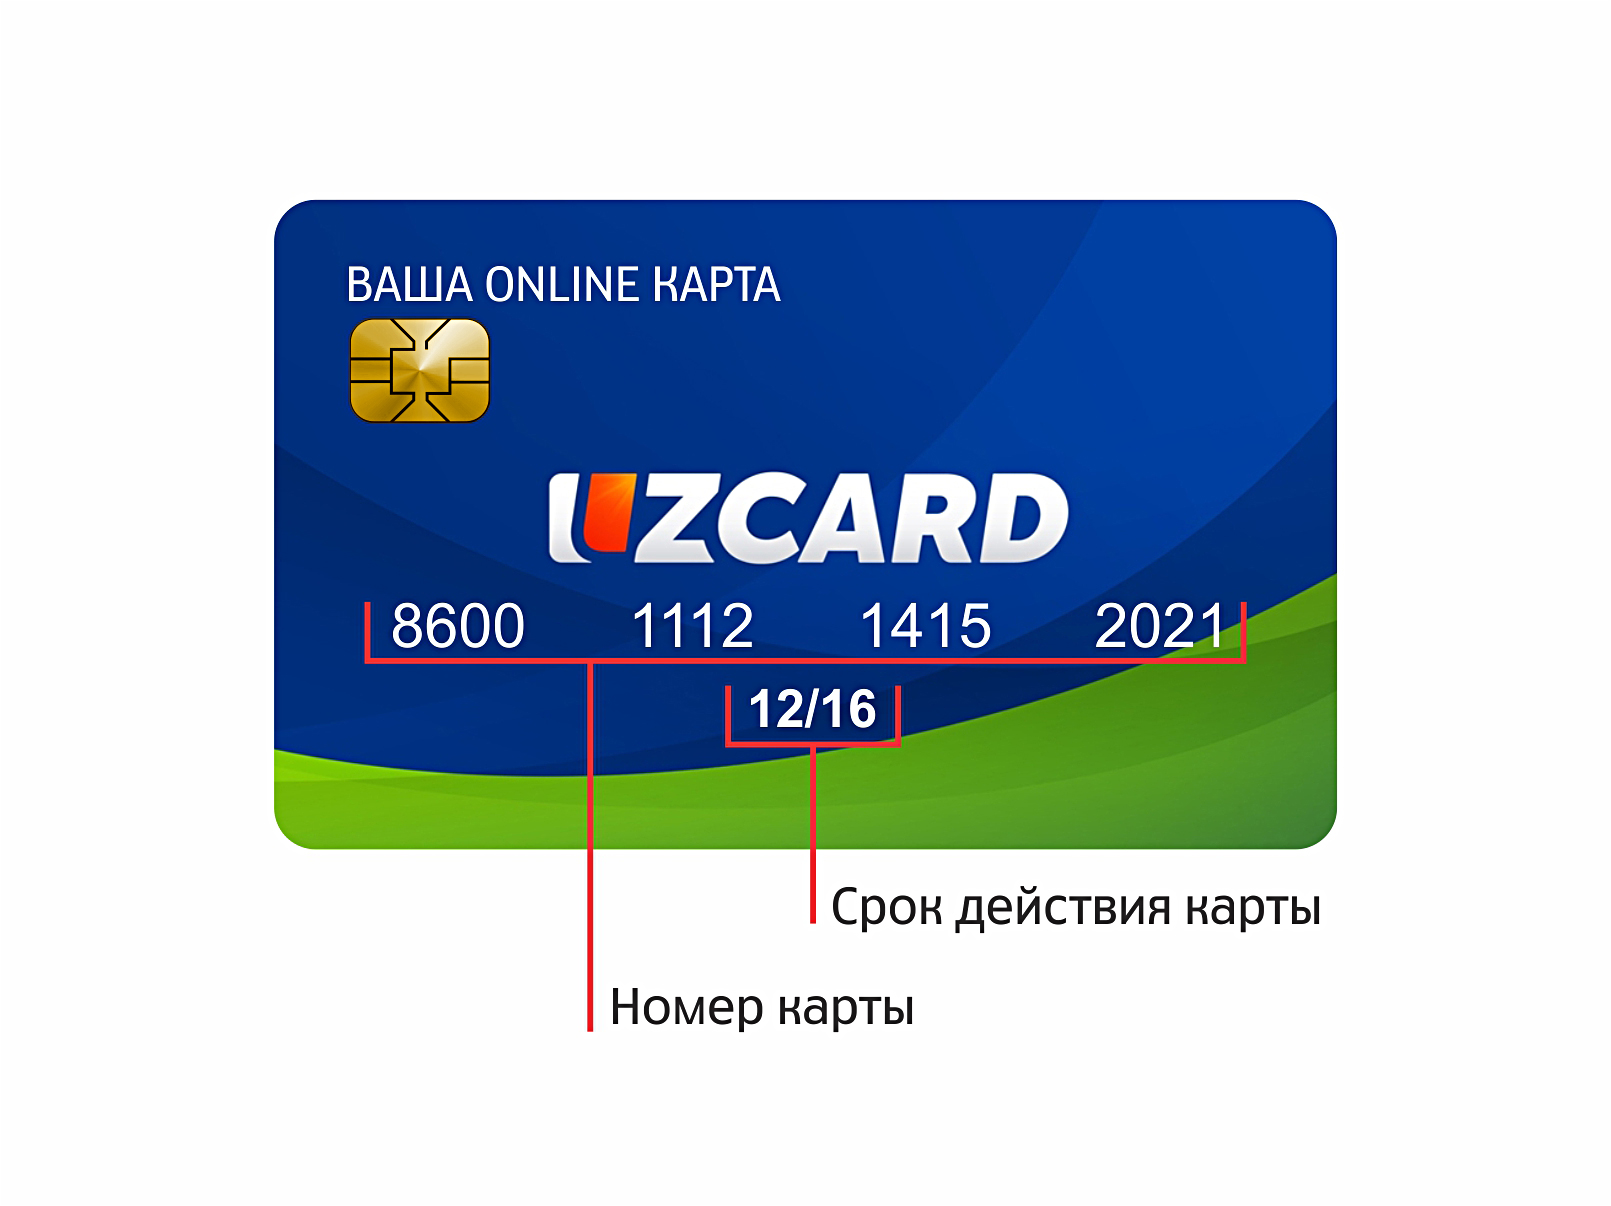 Где можно найти карточку. Карта UZCARD. UZCARD карта в Узбекистане. Пластик карта UZCARD. Пластиковые карточки UZCARD.